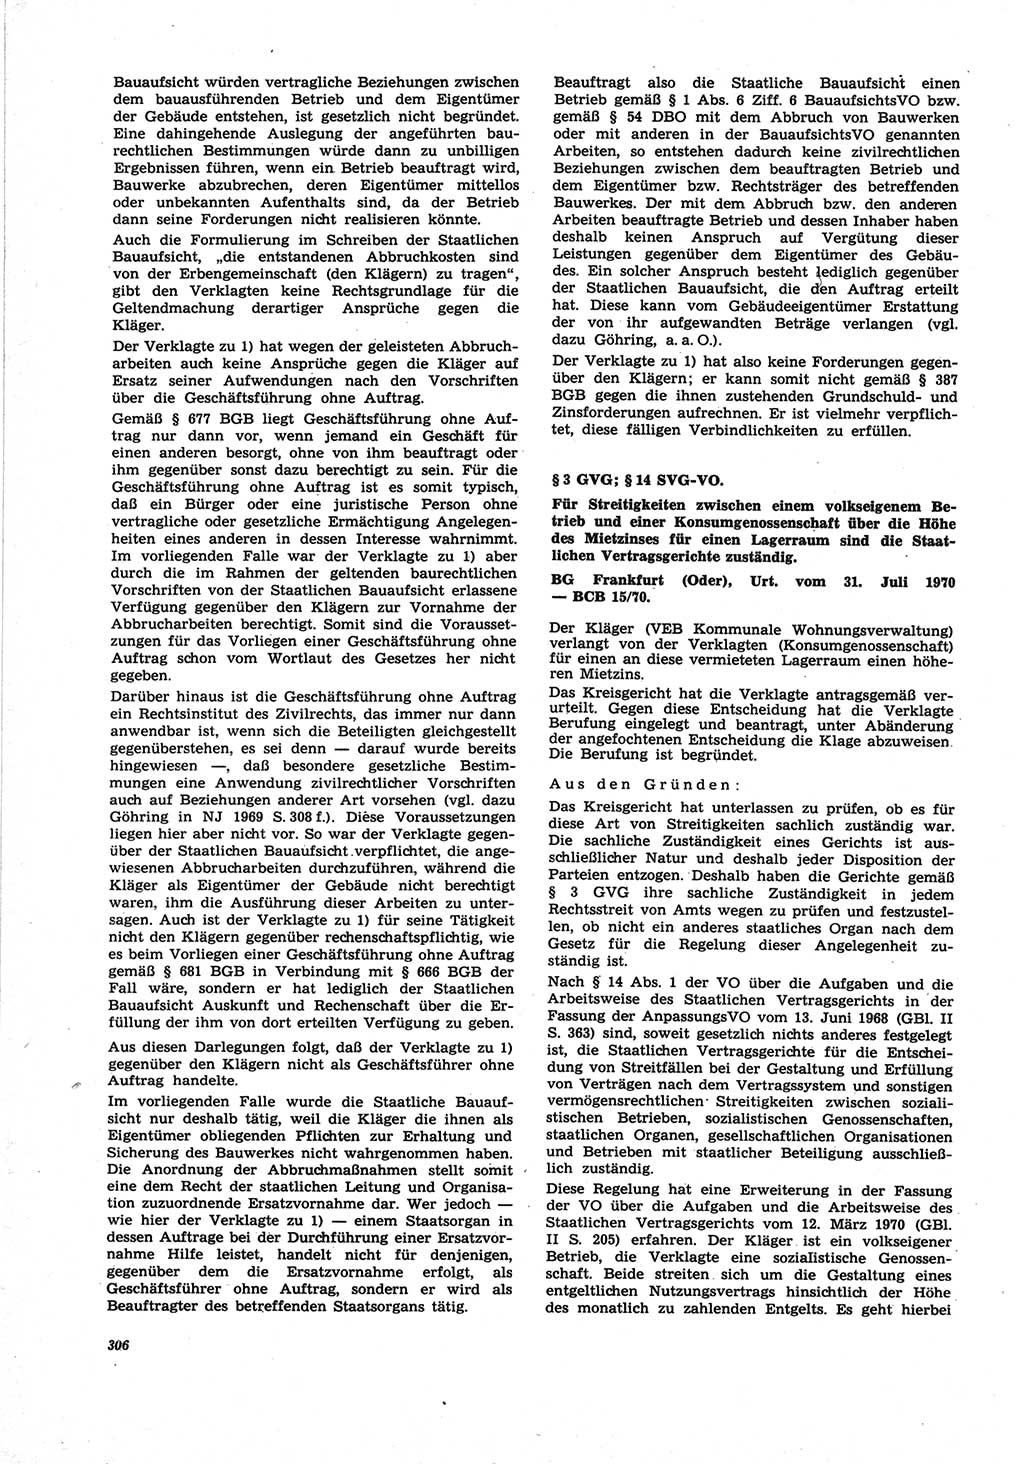 Neue Justiz (NJ), Zeitschrift für Recht und Rechtswissenschaft [Deutsche Demokratische Republik (DDR)], 25. Jahrgang 1971, Seite 306 (NJ DDR 1971, S. 306)